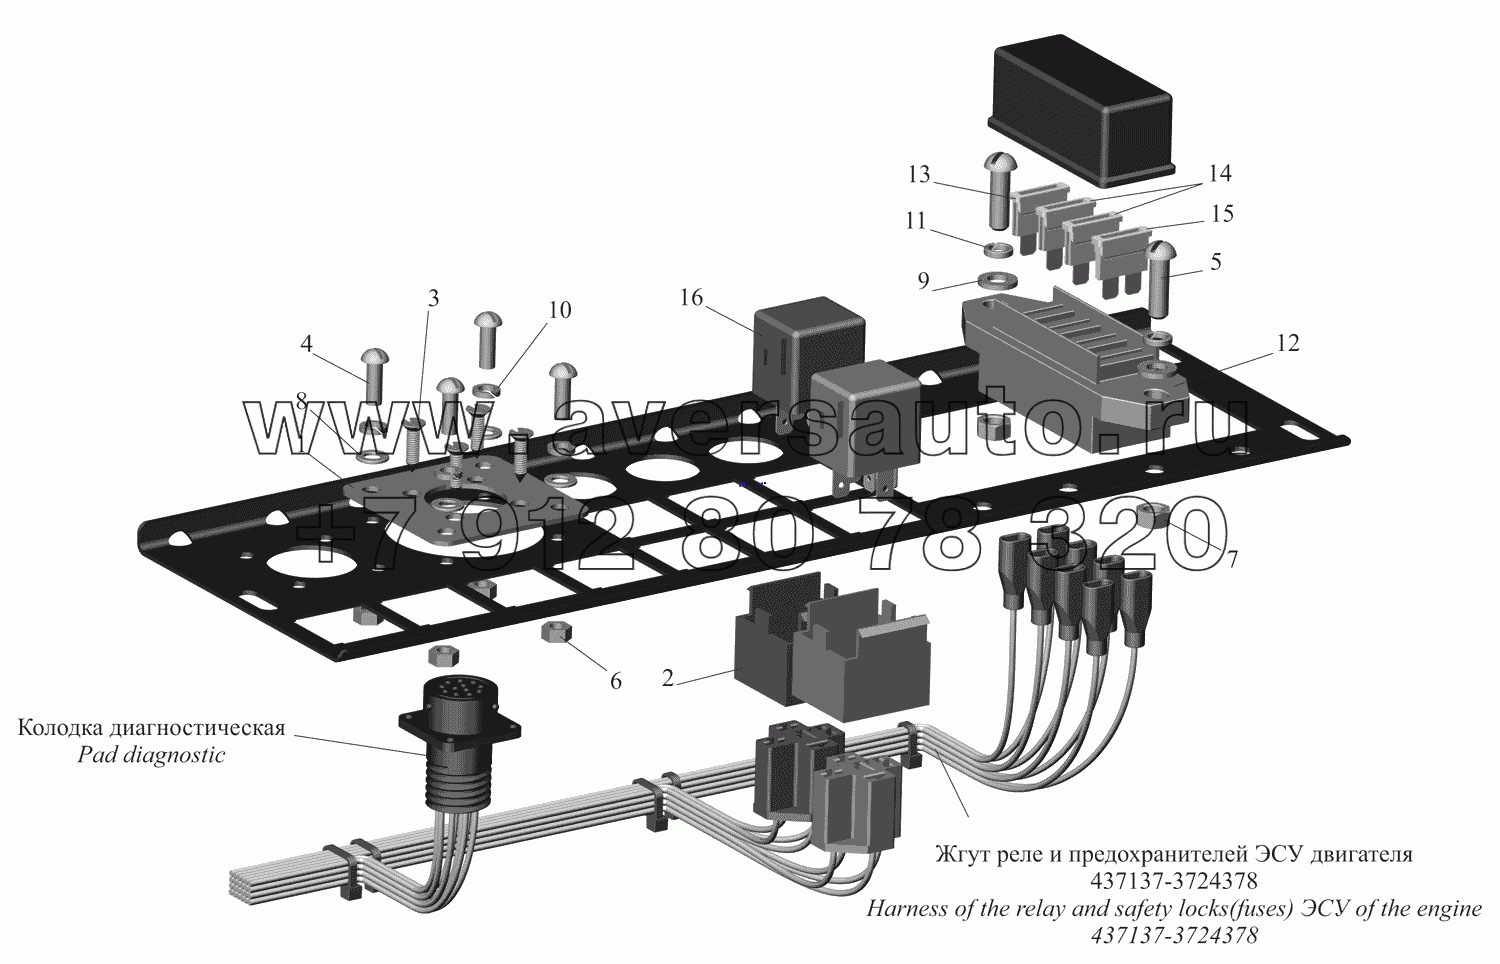 Панель реле и предохранителей ЭСУ двигателя